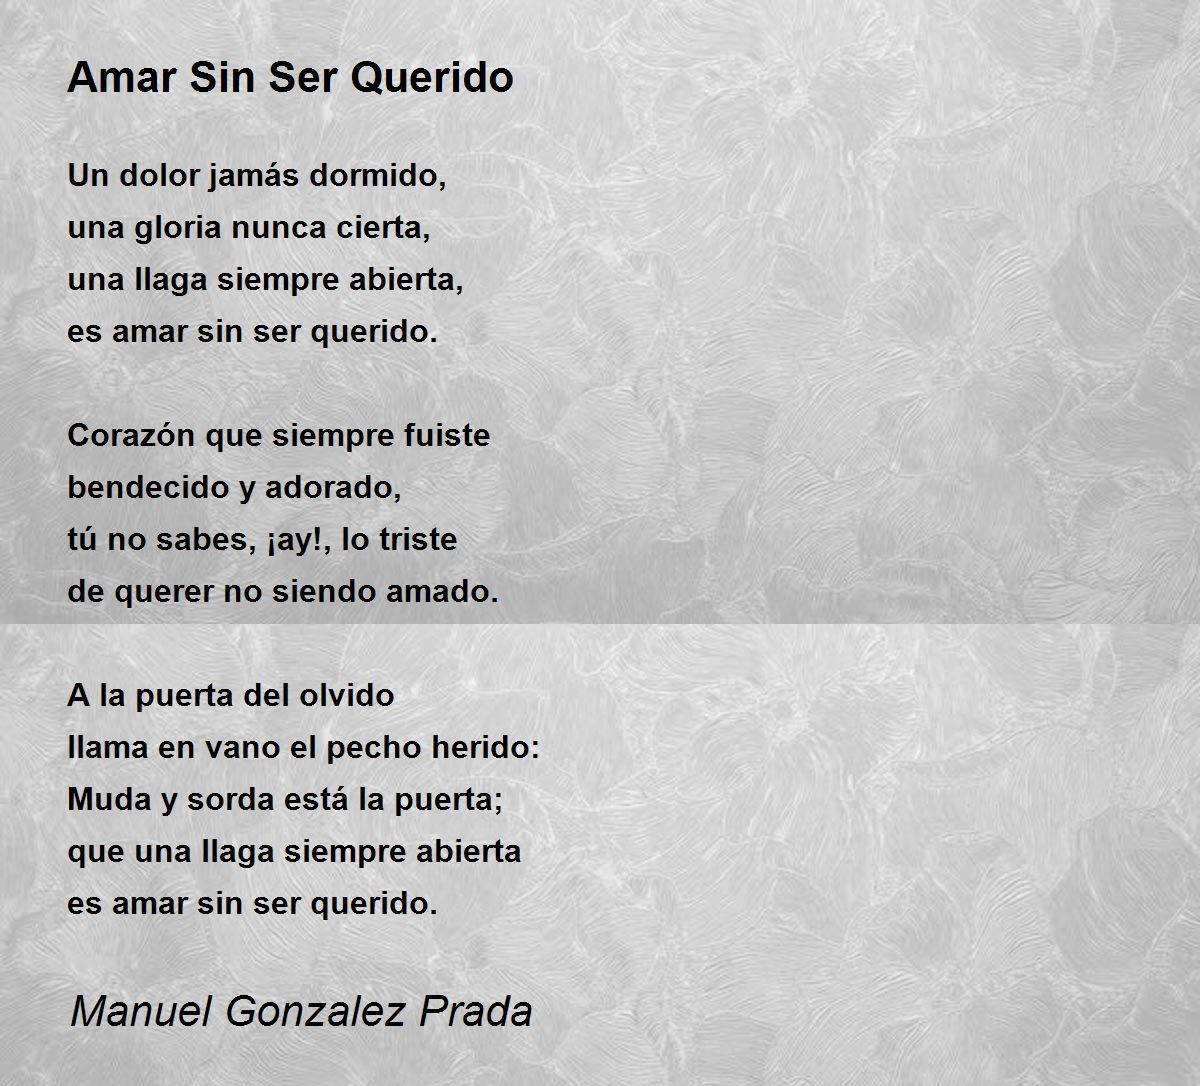 Amar Sin Ser Querido - Amar Sin Ser Querido Poem by Manuel Gonzalez Prada